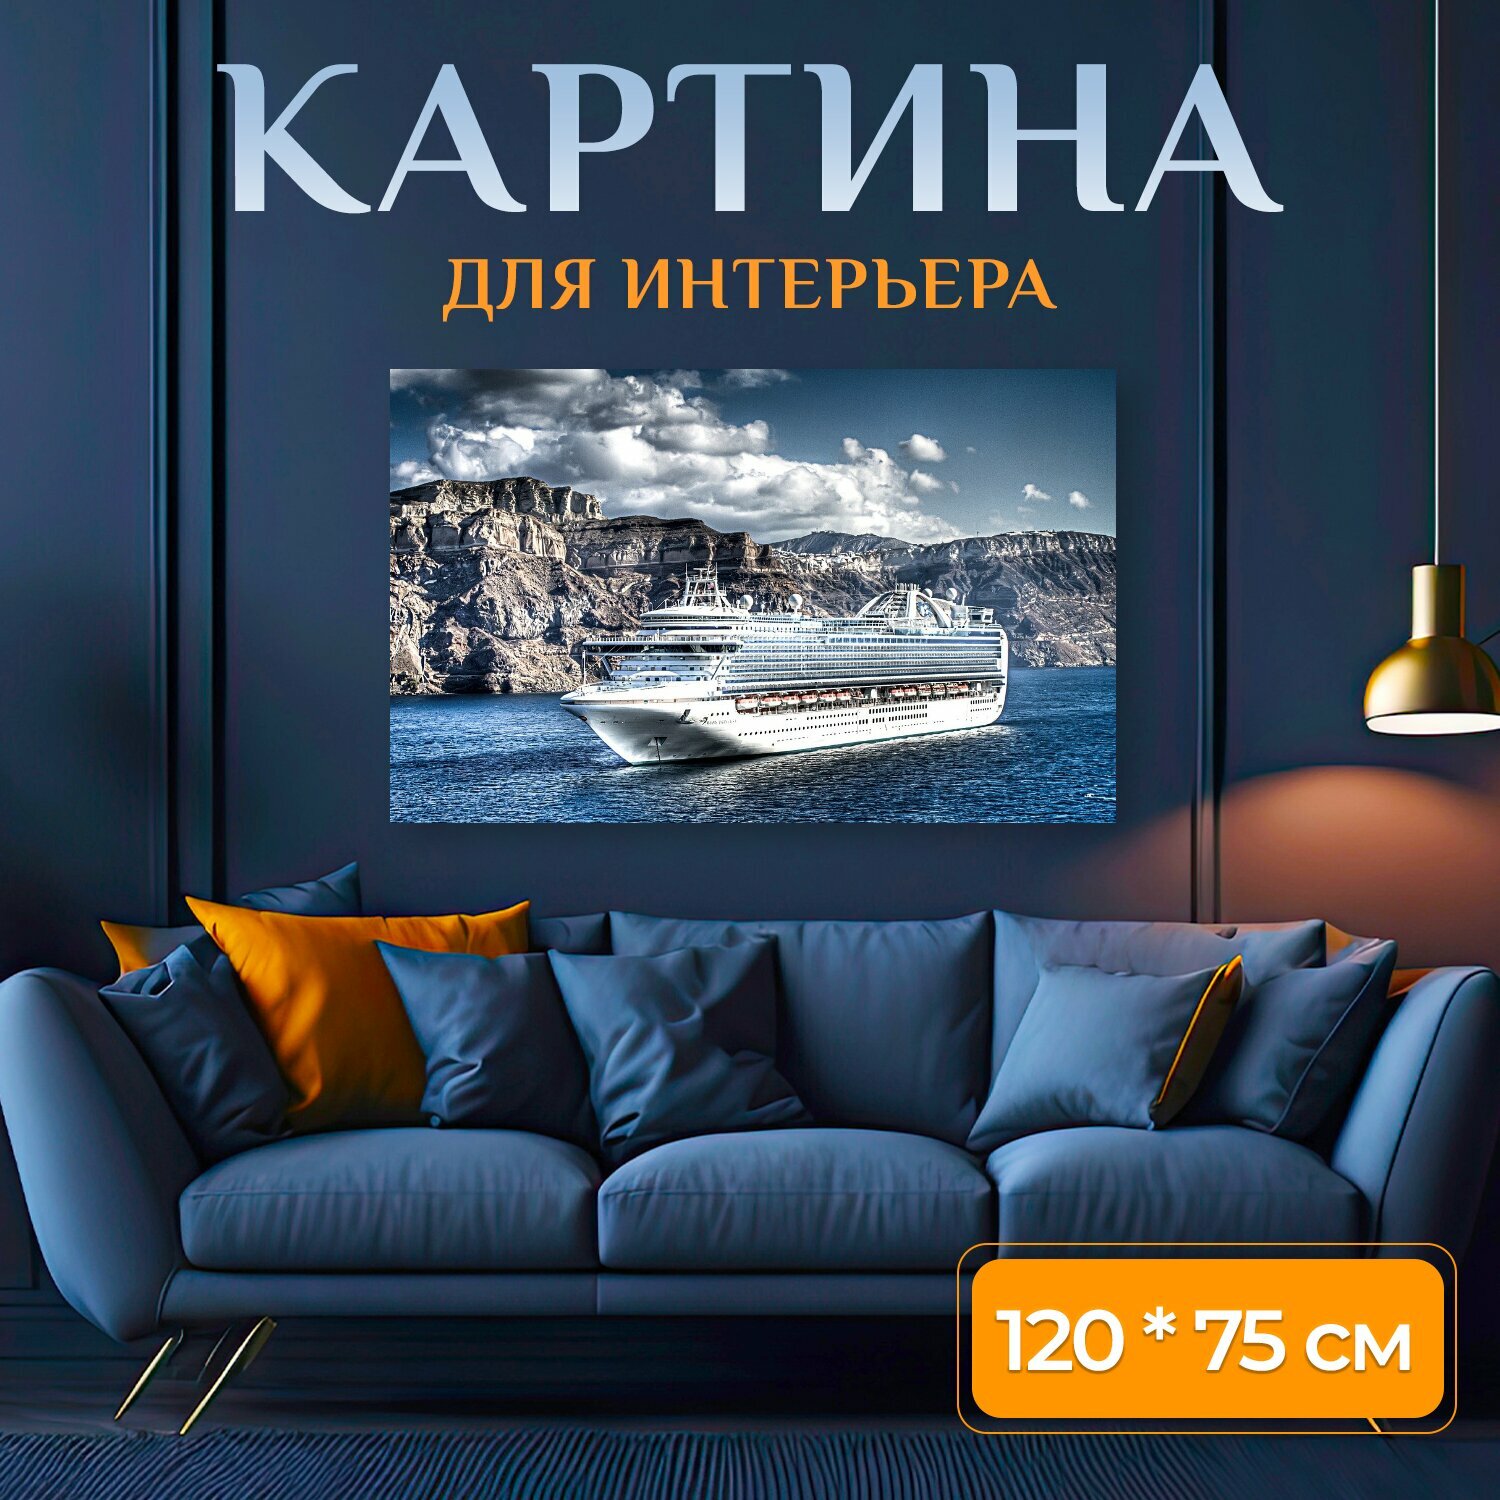 Картина на холсте "Круизное судно, средиземное море, океанский лайнер" на подрамнике 120х75 см. для интерьера